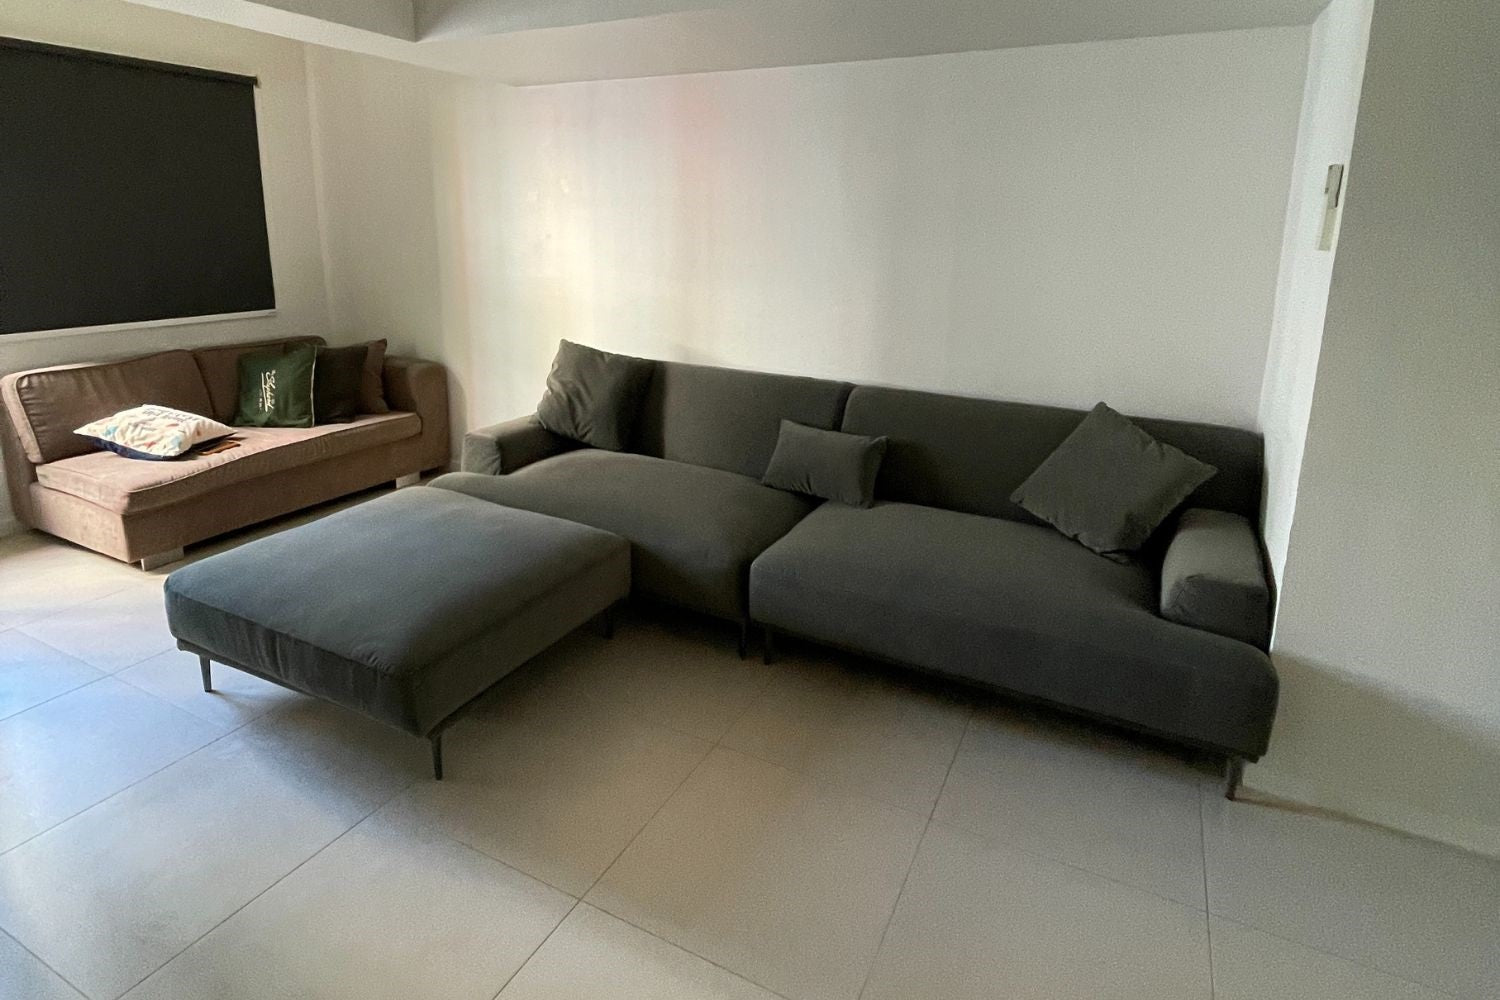 Crystal 280cm Grey (Furla-64) Fabric Sofa Joanne + Ottoman | Mar 24